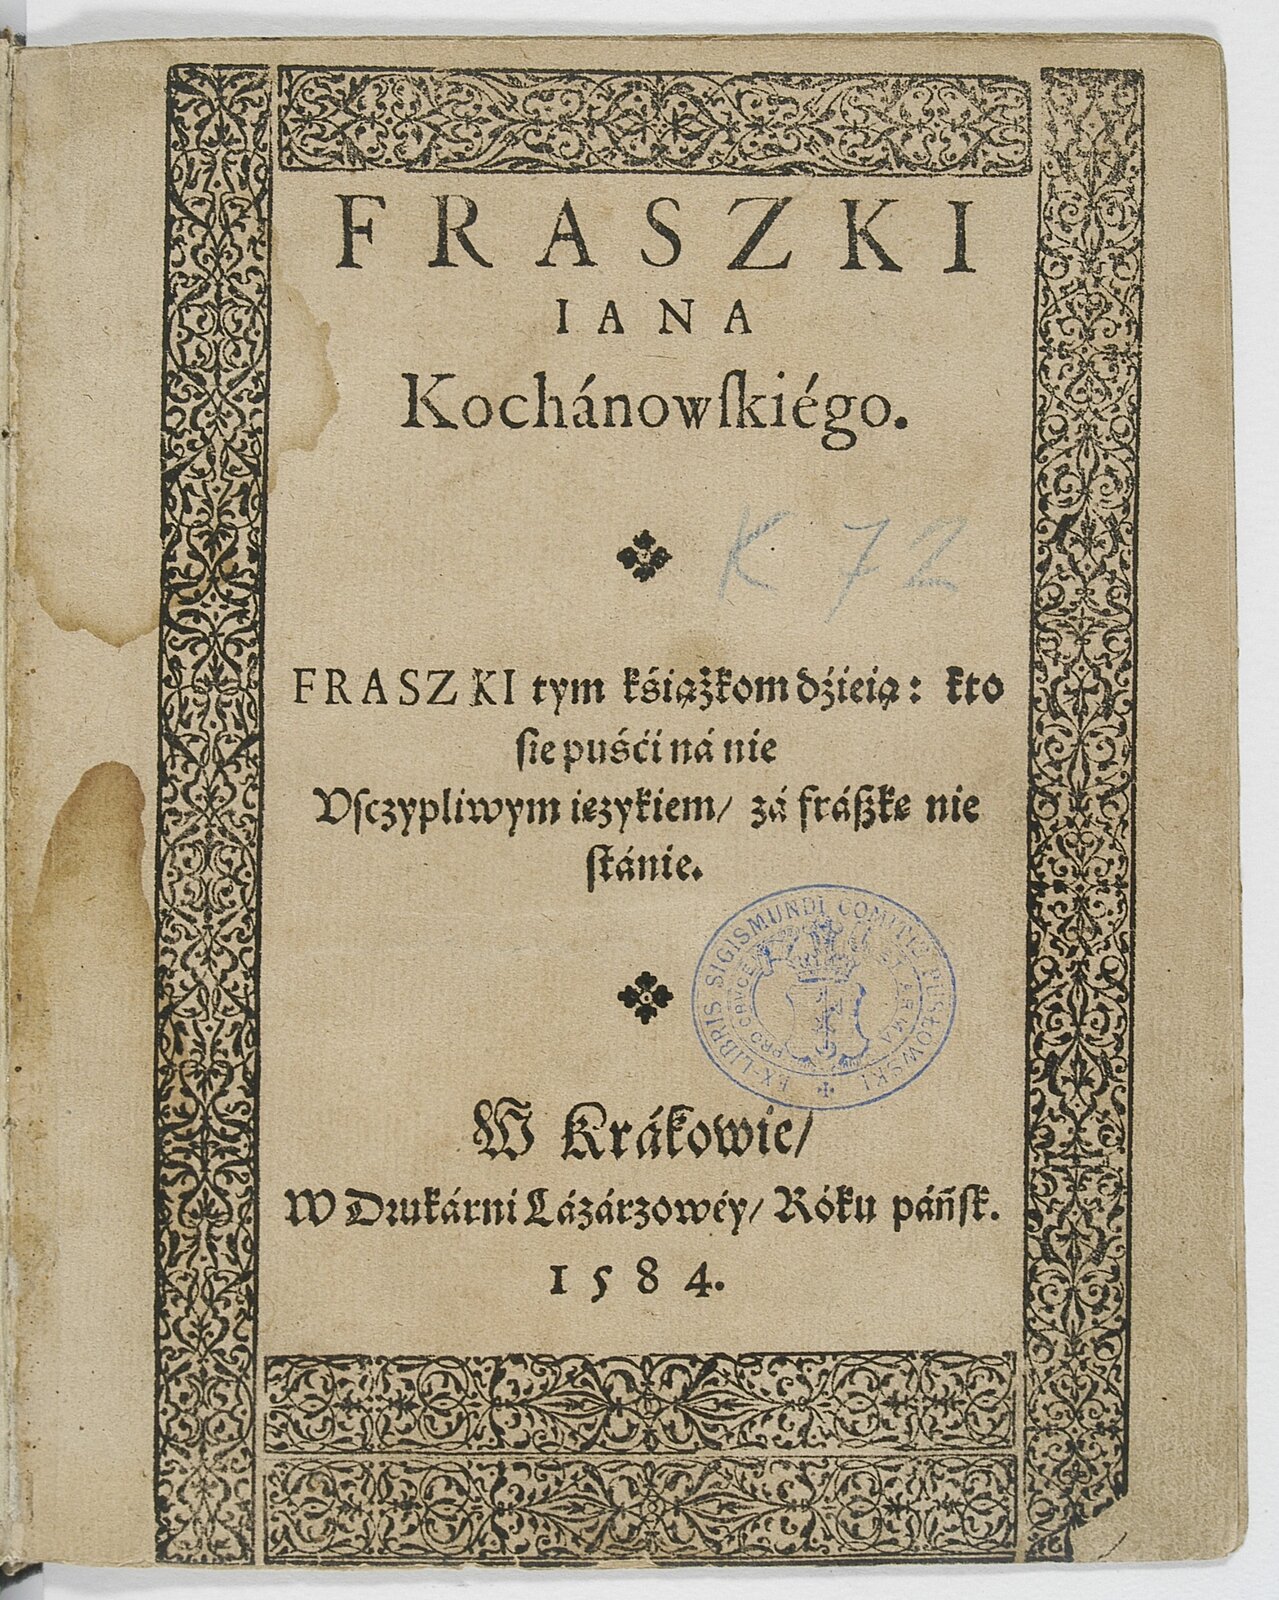 Fraszki Iana Kochanowskiego (strona tytułowa) Źródło: Jan Kochanowski, Fraszki Iana Kochanowskiego (strona tytułowa), 1584, domena publiczna.